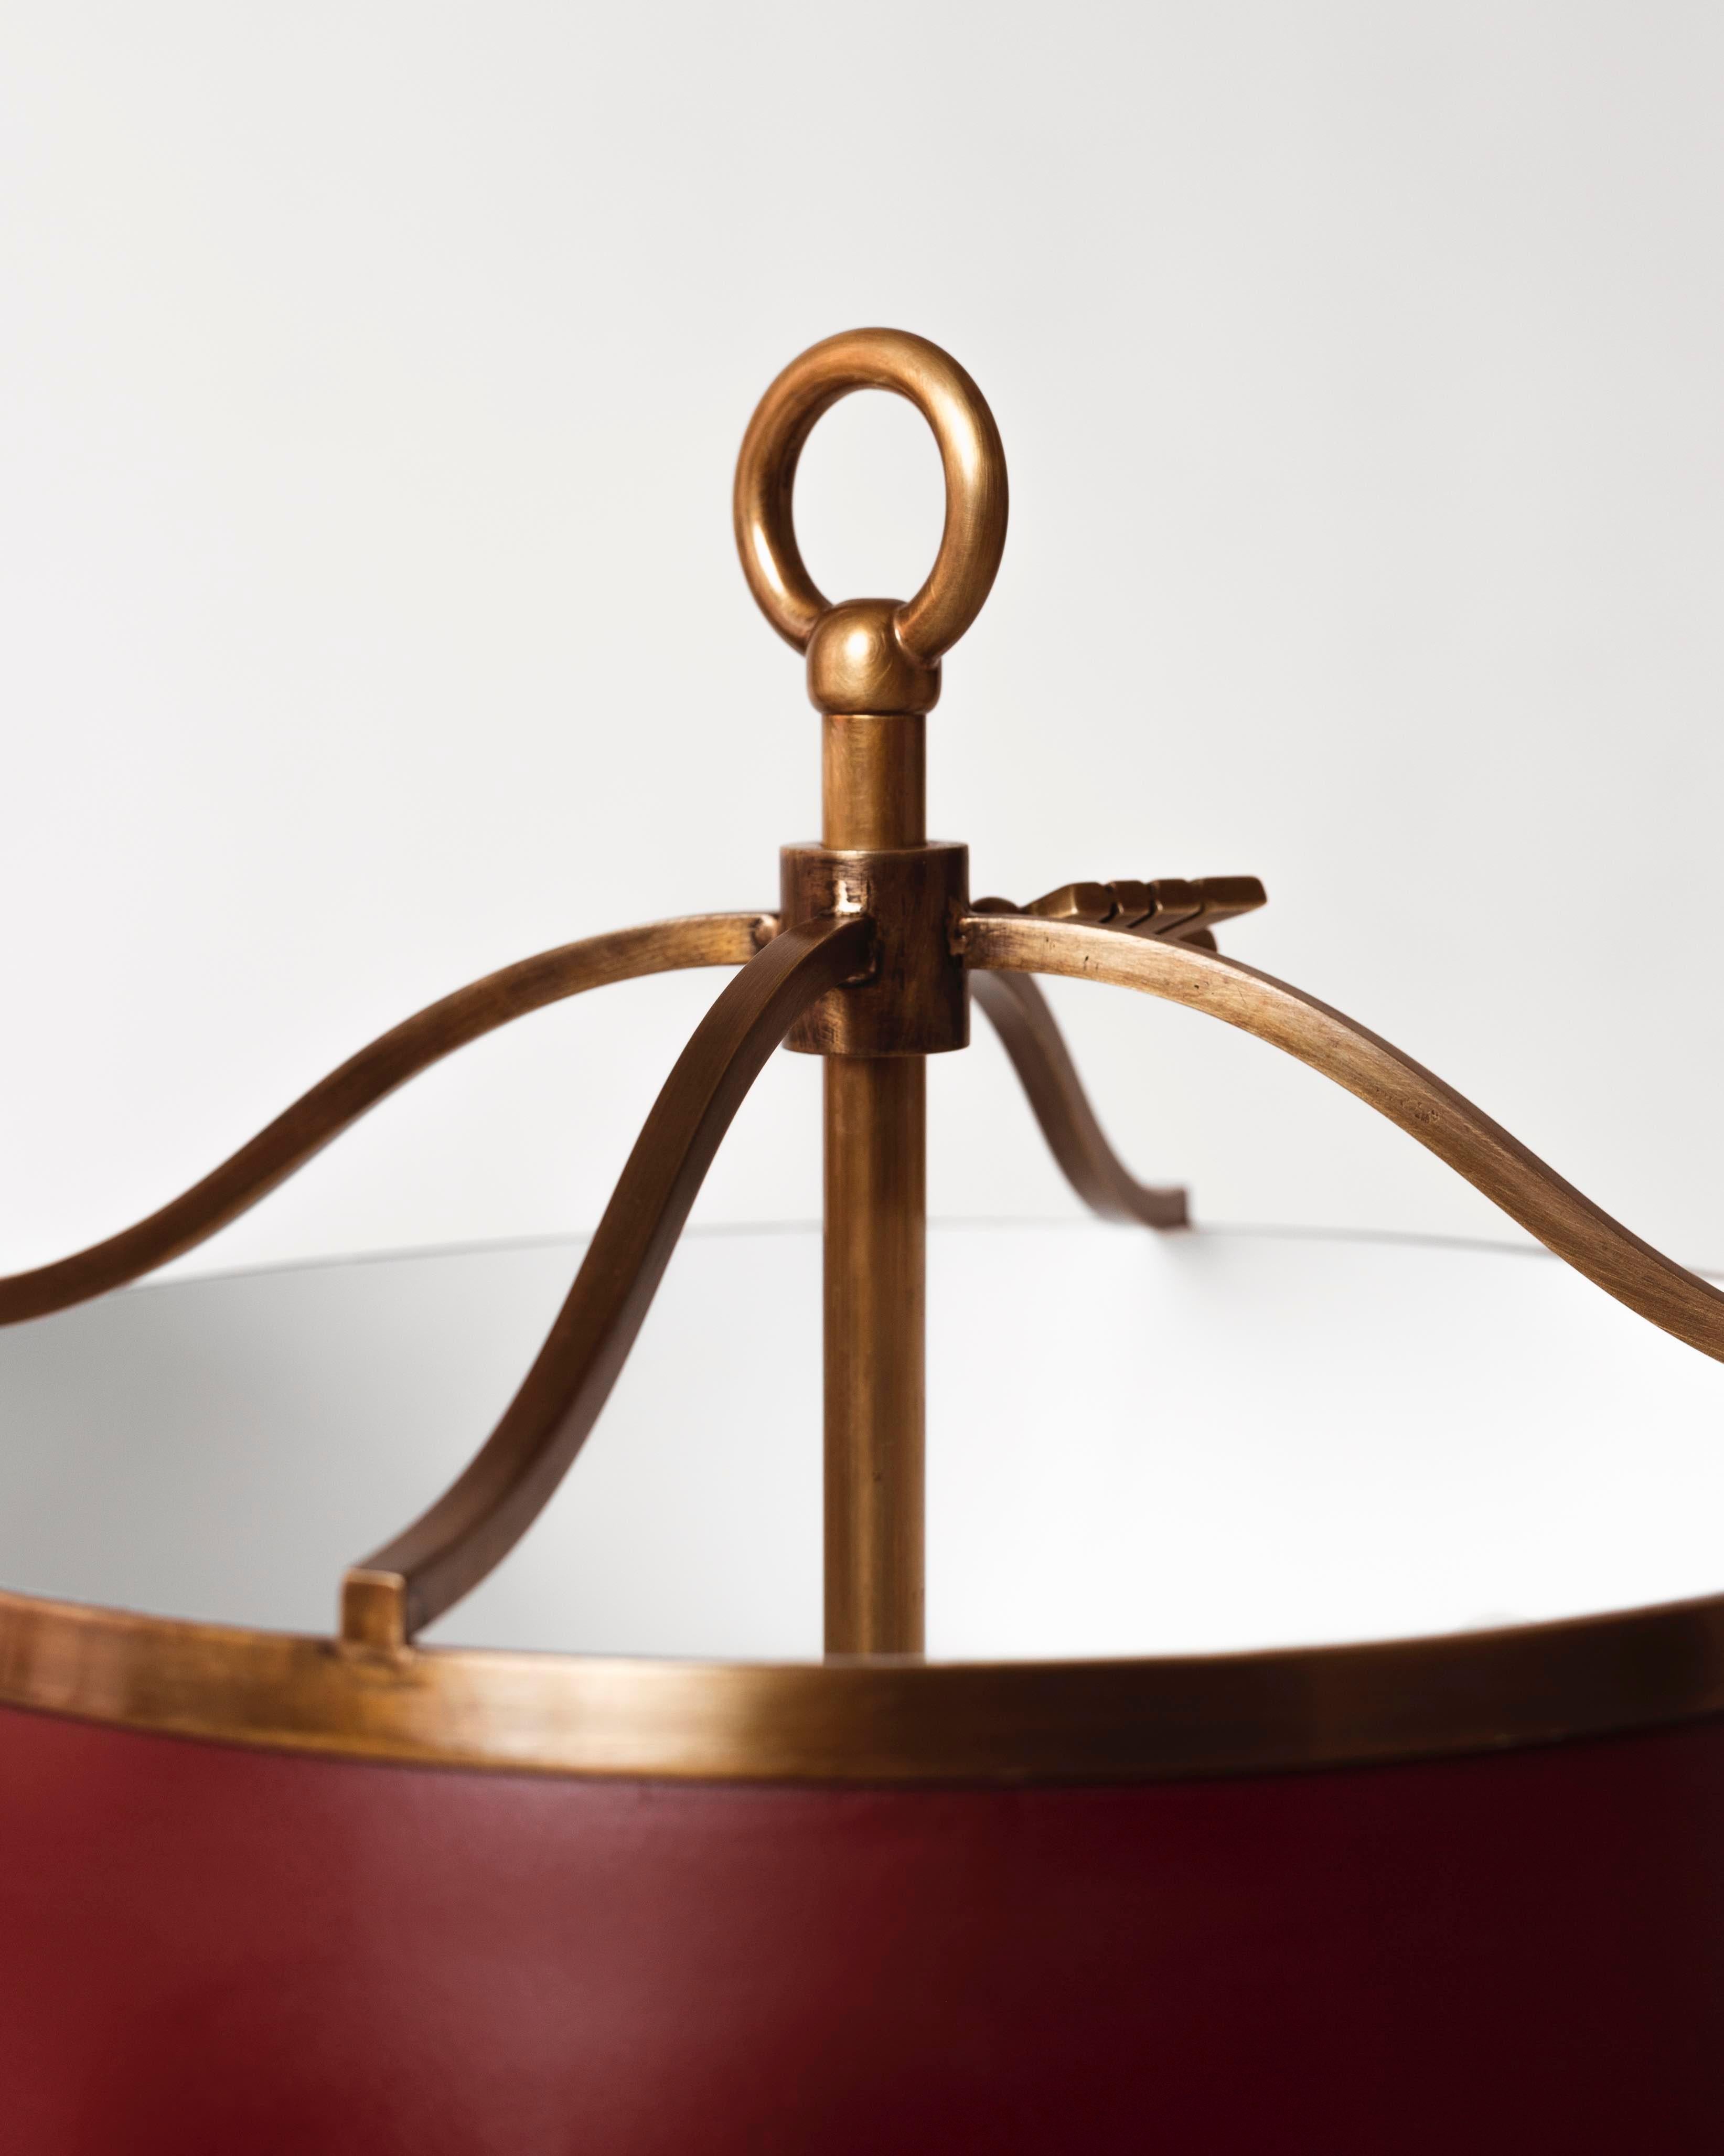 Tischlampe aus Messing mit lackiertem Messingschirm.
Diese Lampe ist das, was wir als eklektisch historisch bezeichnen, da sie ägyptische, römische, englische und neoklassische Elemente kombiniert. Der Einfluss der alten Kulturen und der primitiven